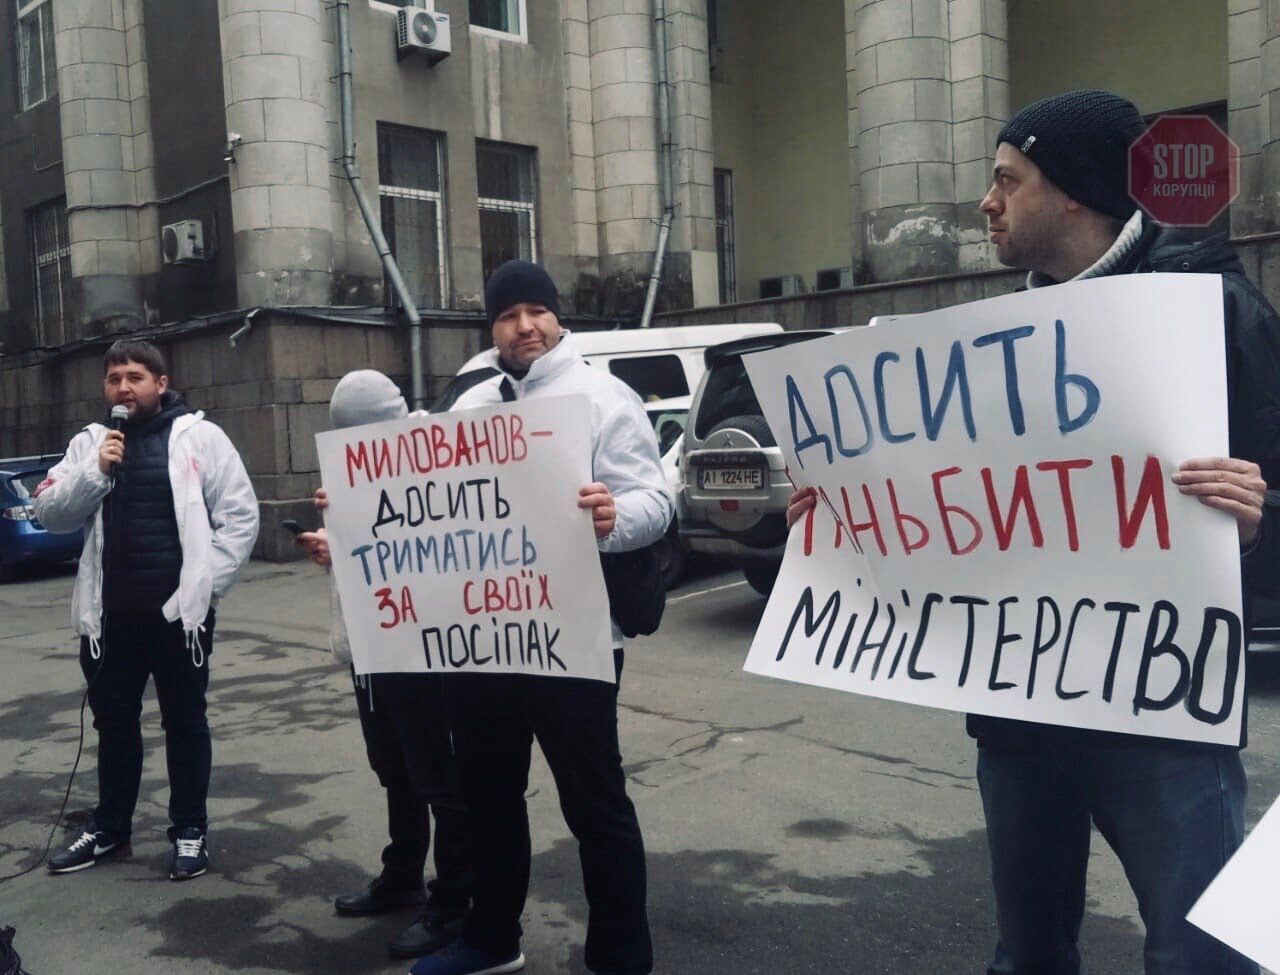  Активісти вимагали припинити ганьбити міністерство Фото: СтопКор